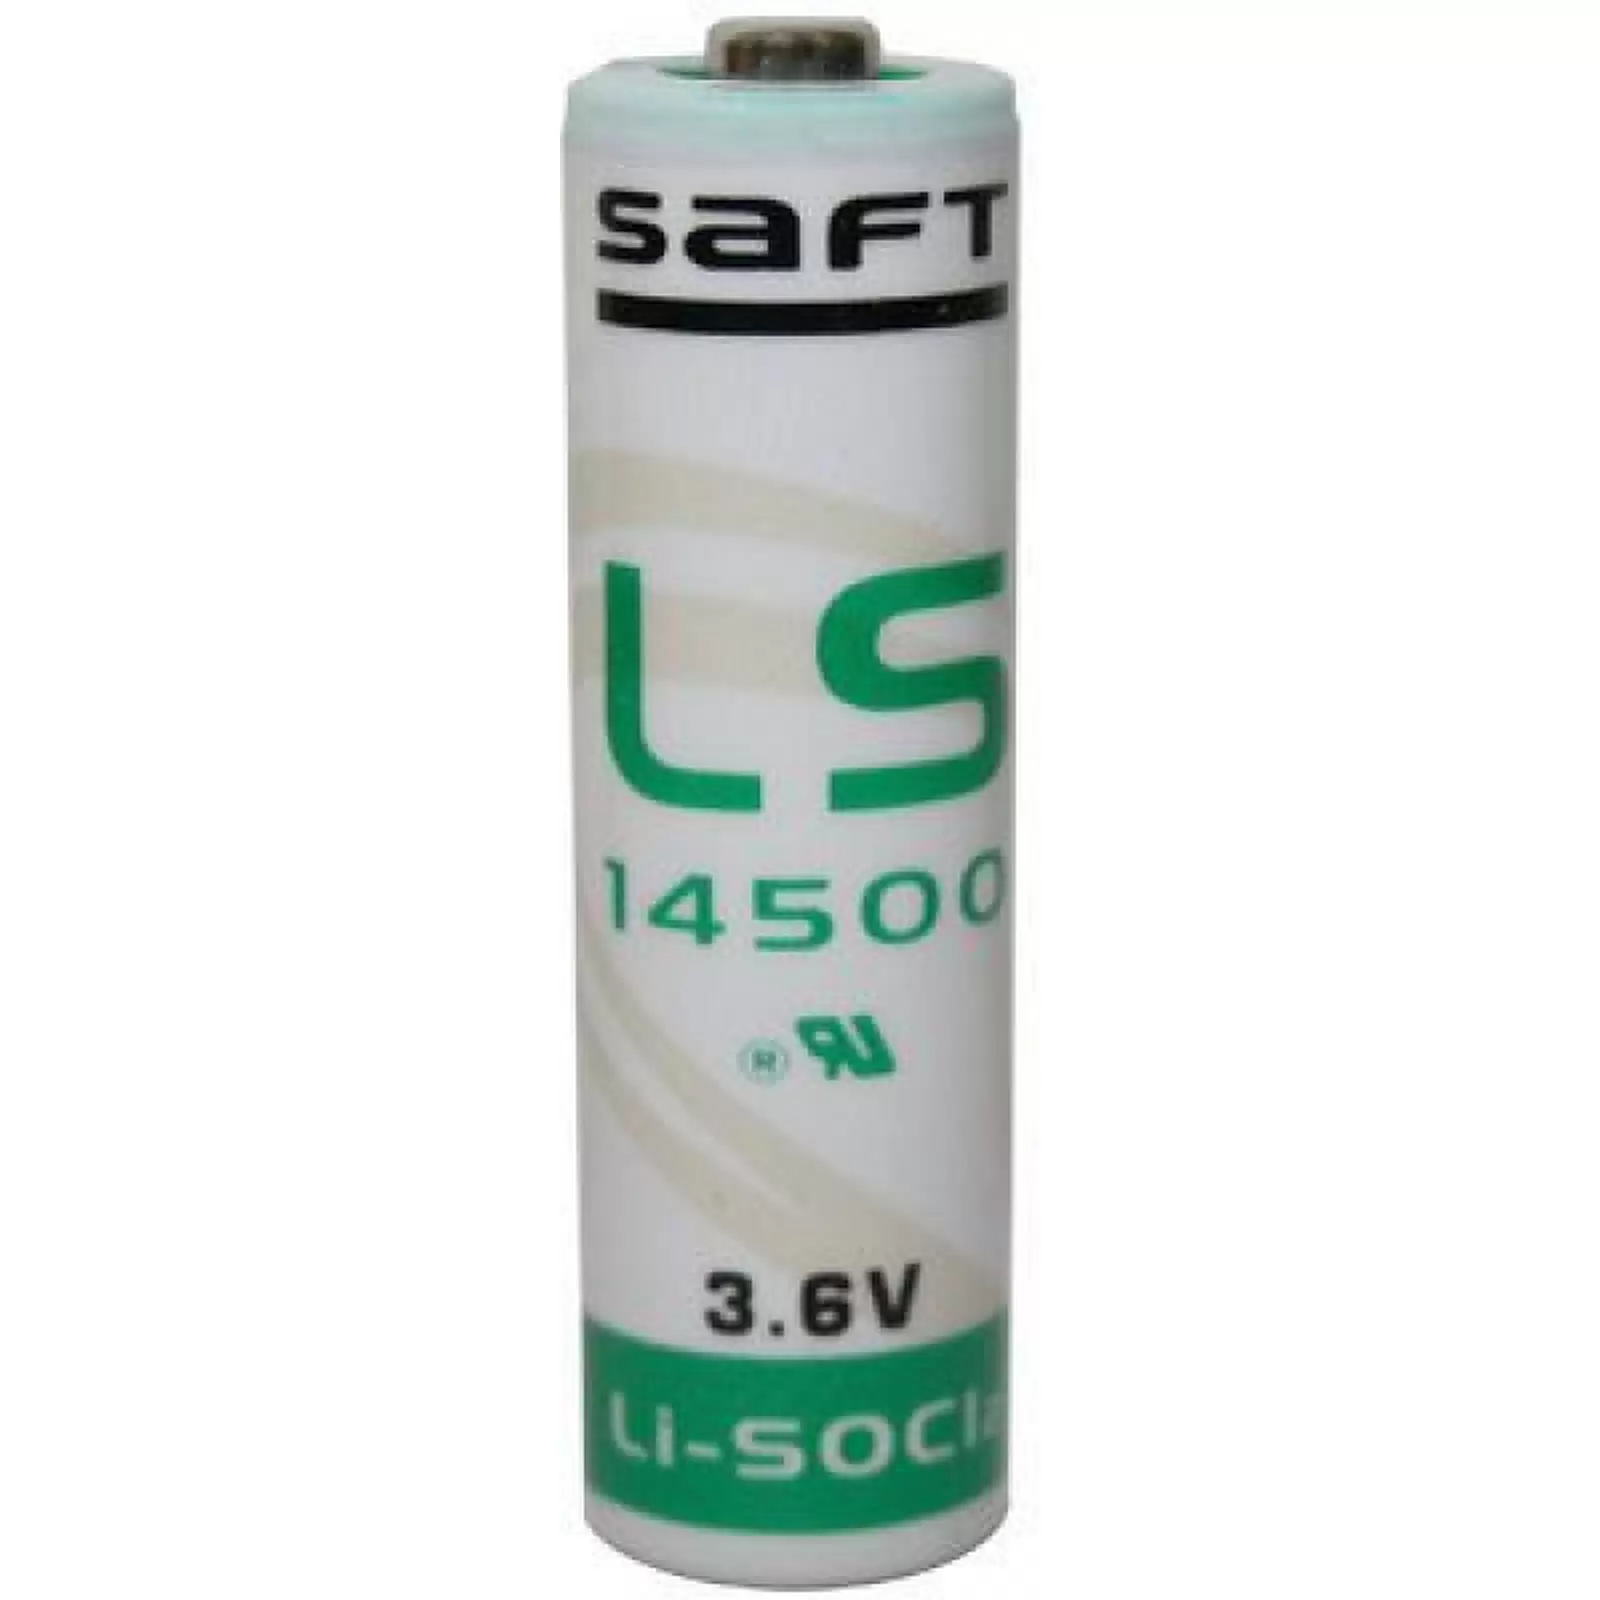 Lithium Batterie Saft LS14500 Mignon/AA 3,6Volt